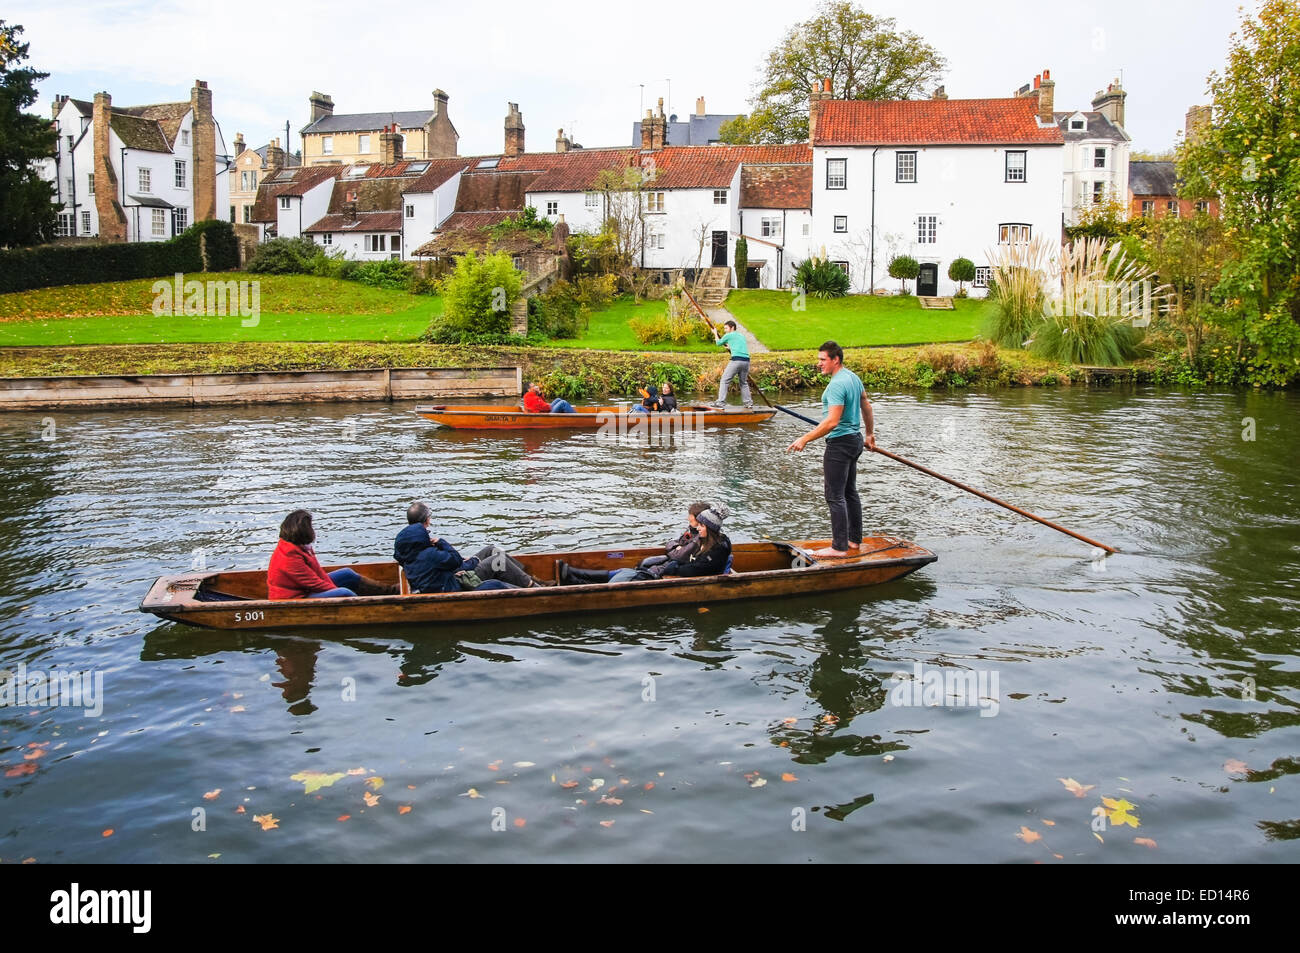 Promenades en barque sur la rivière Cam Cambridge Cambridgeshire, Angleterre Royaume-Uni UK Banque D'Images